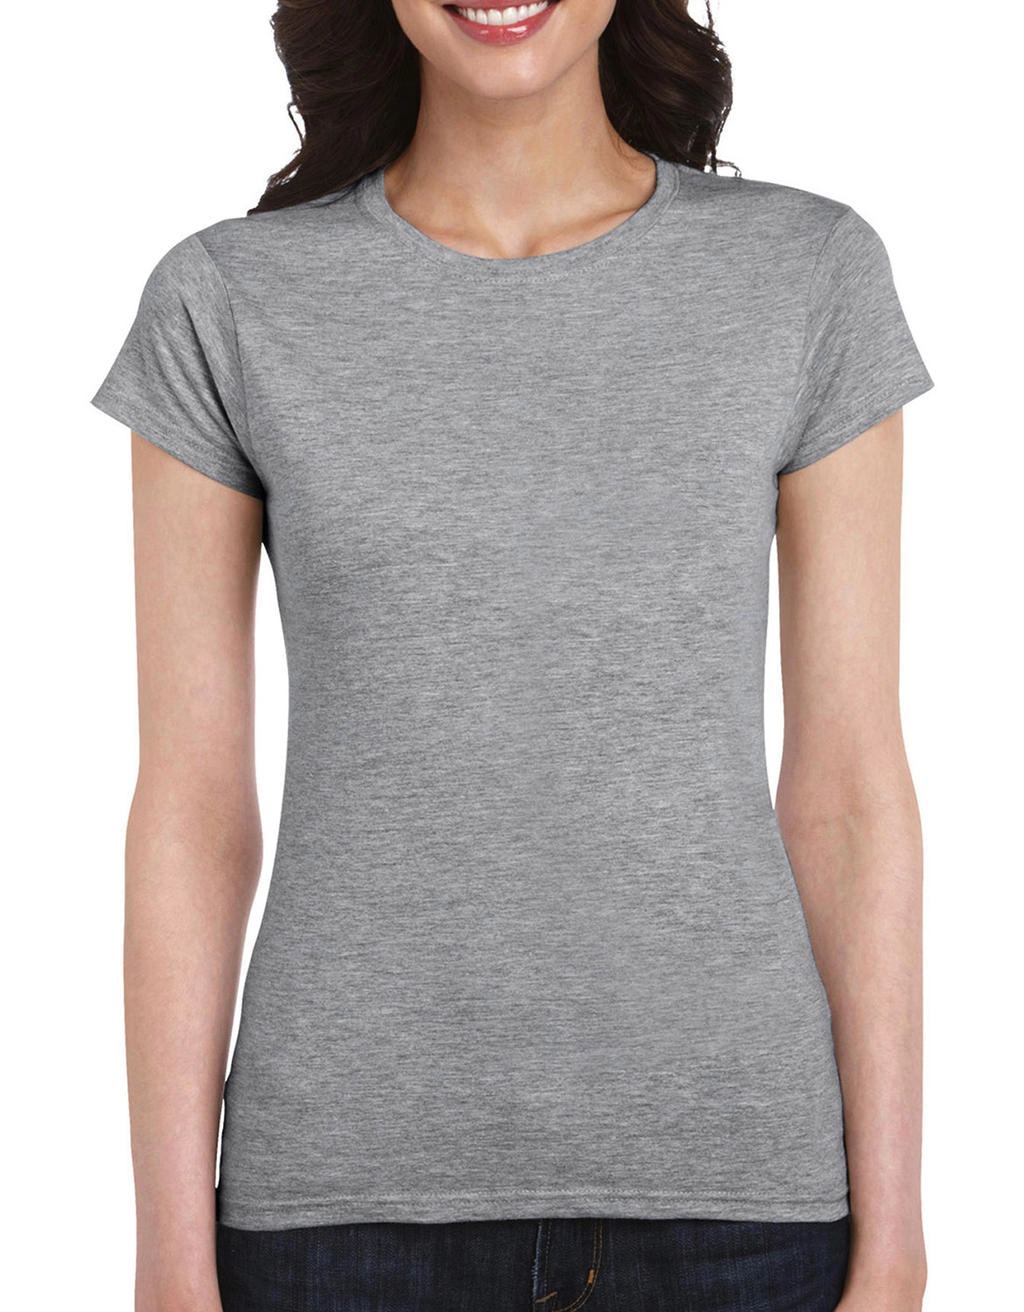 Softstyle® Ladies` T-Shirt zum Besticken und Bedrucken in der Farbe Sport Grey mit Ihren Logo, Schriftzug oder Motiv.